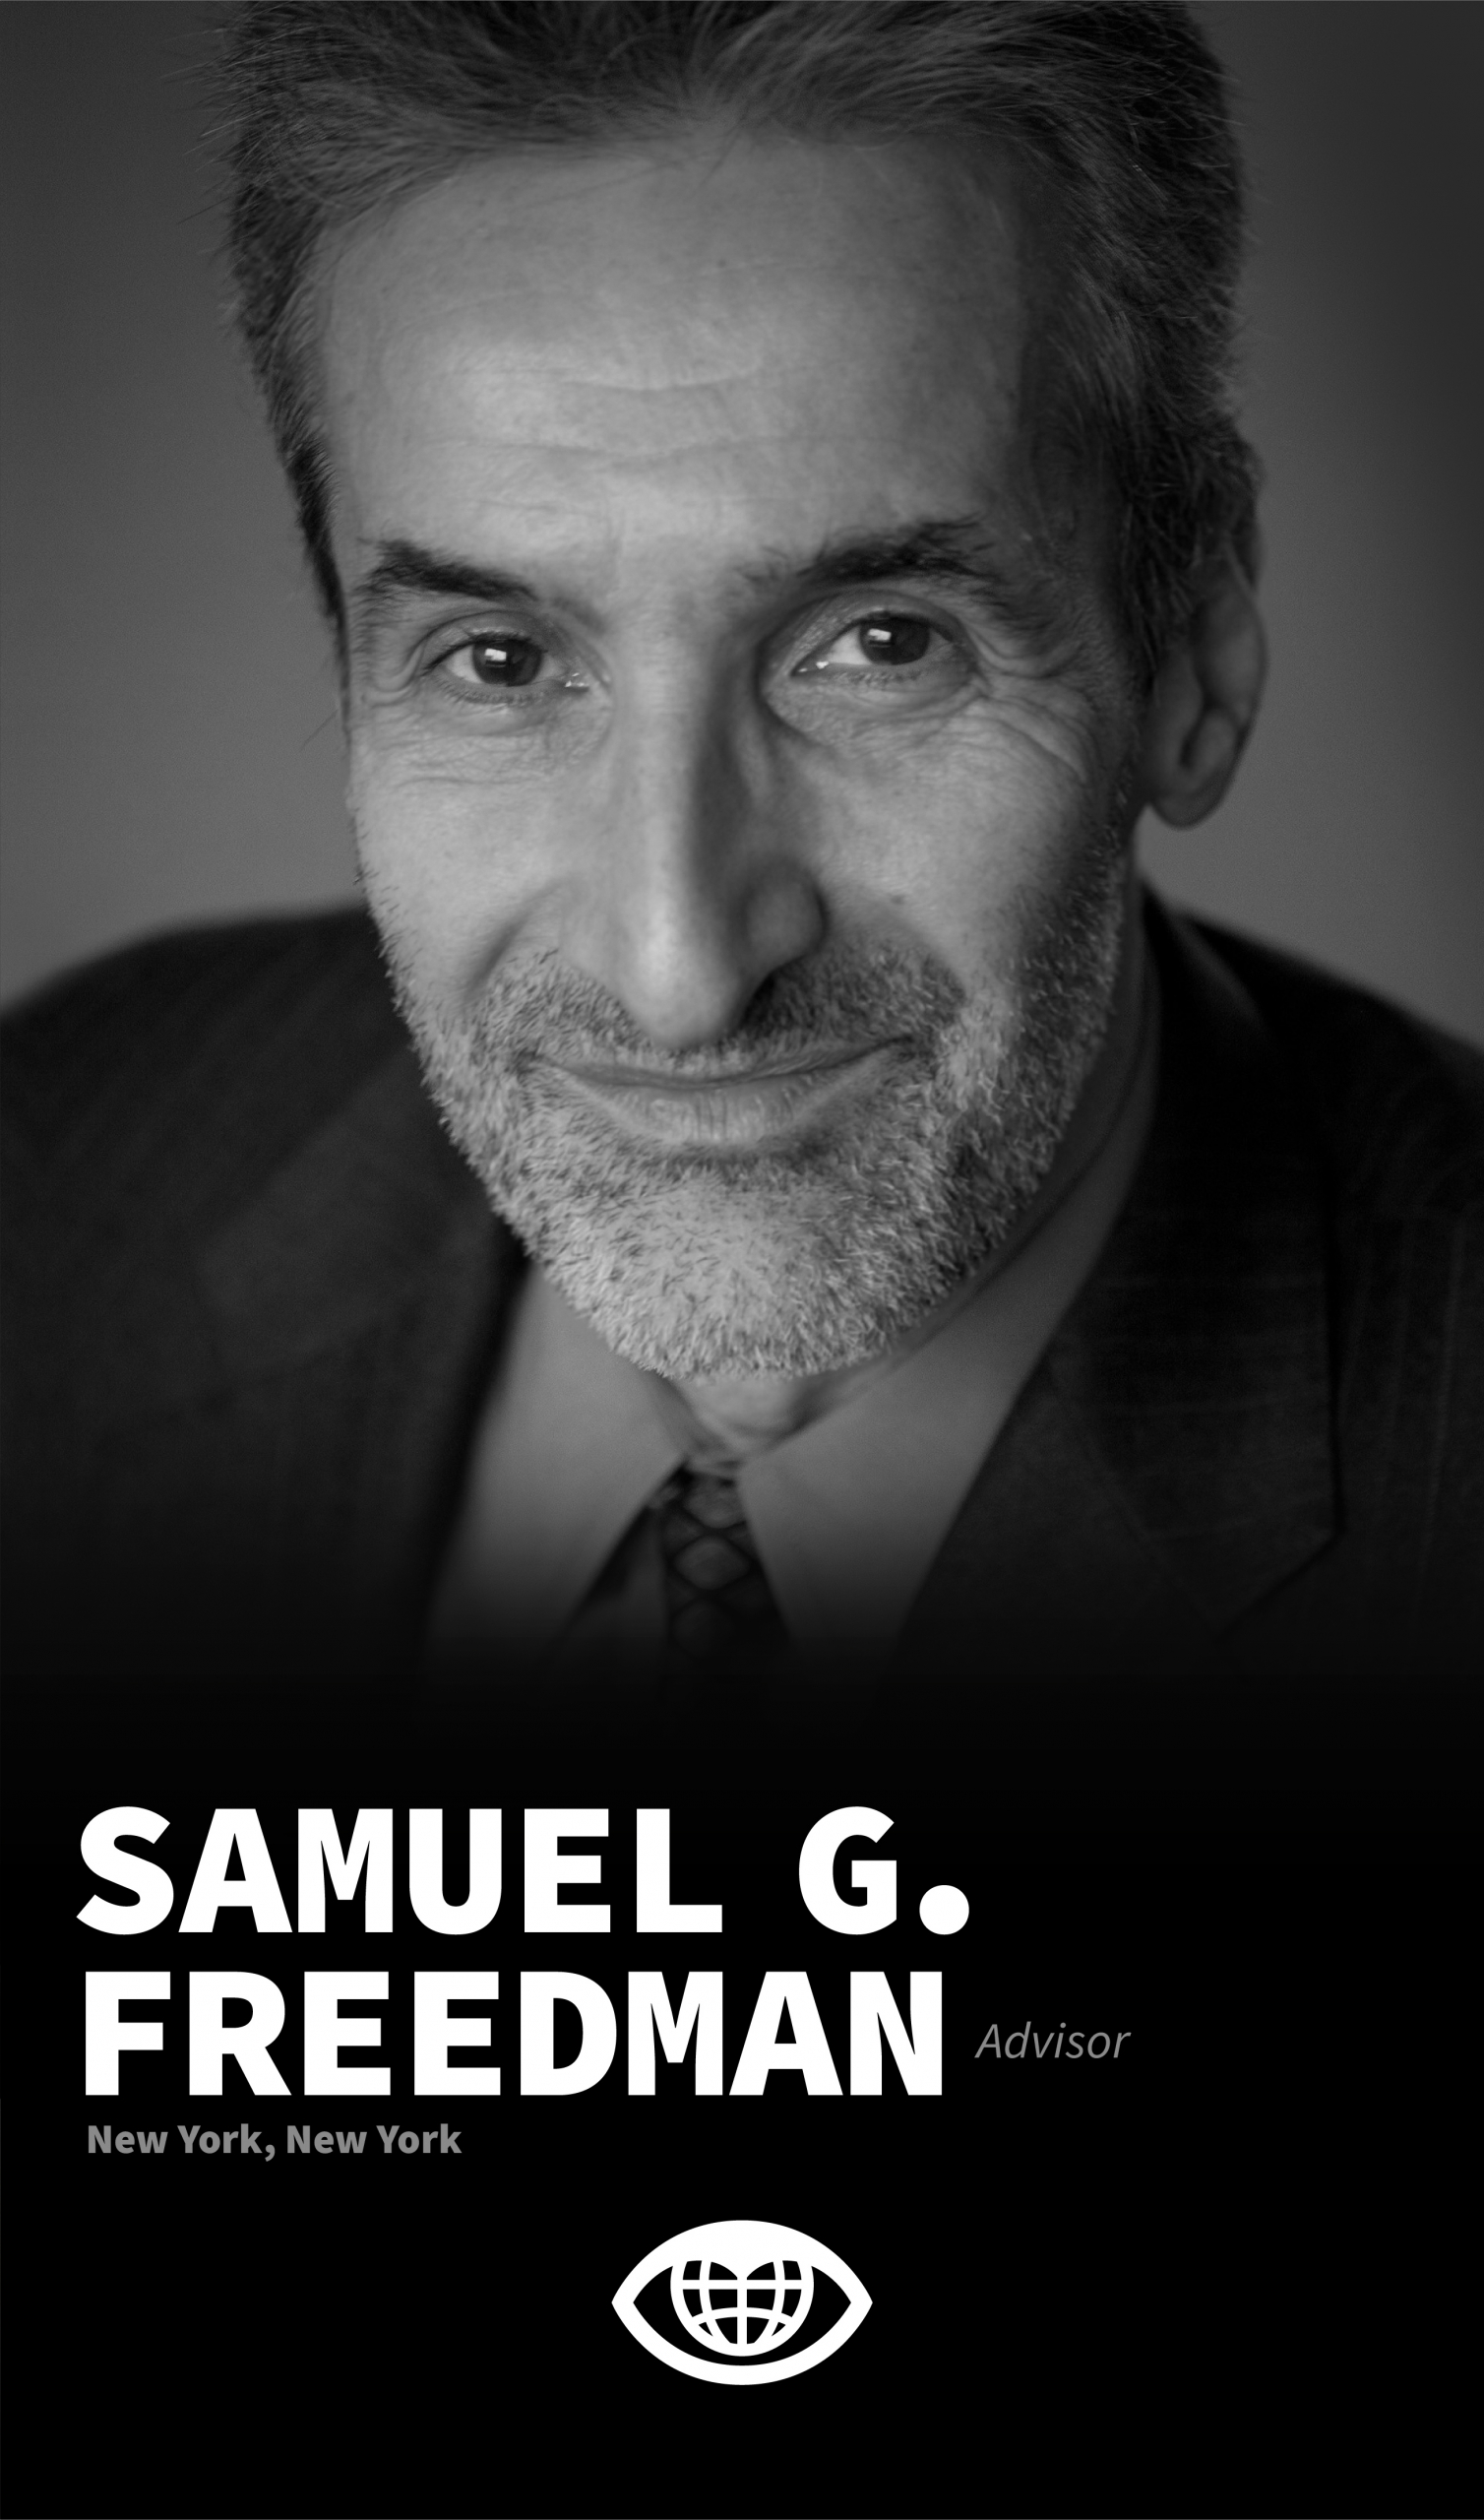 Samuel G. Freedman